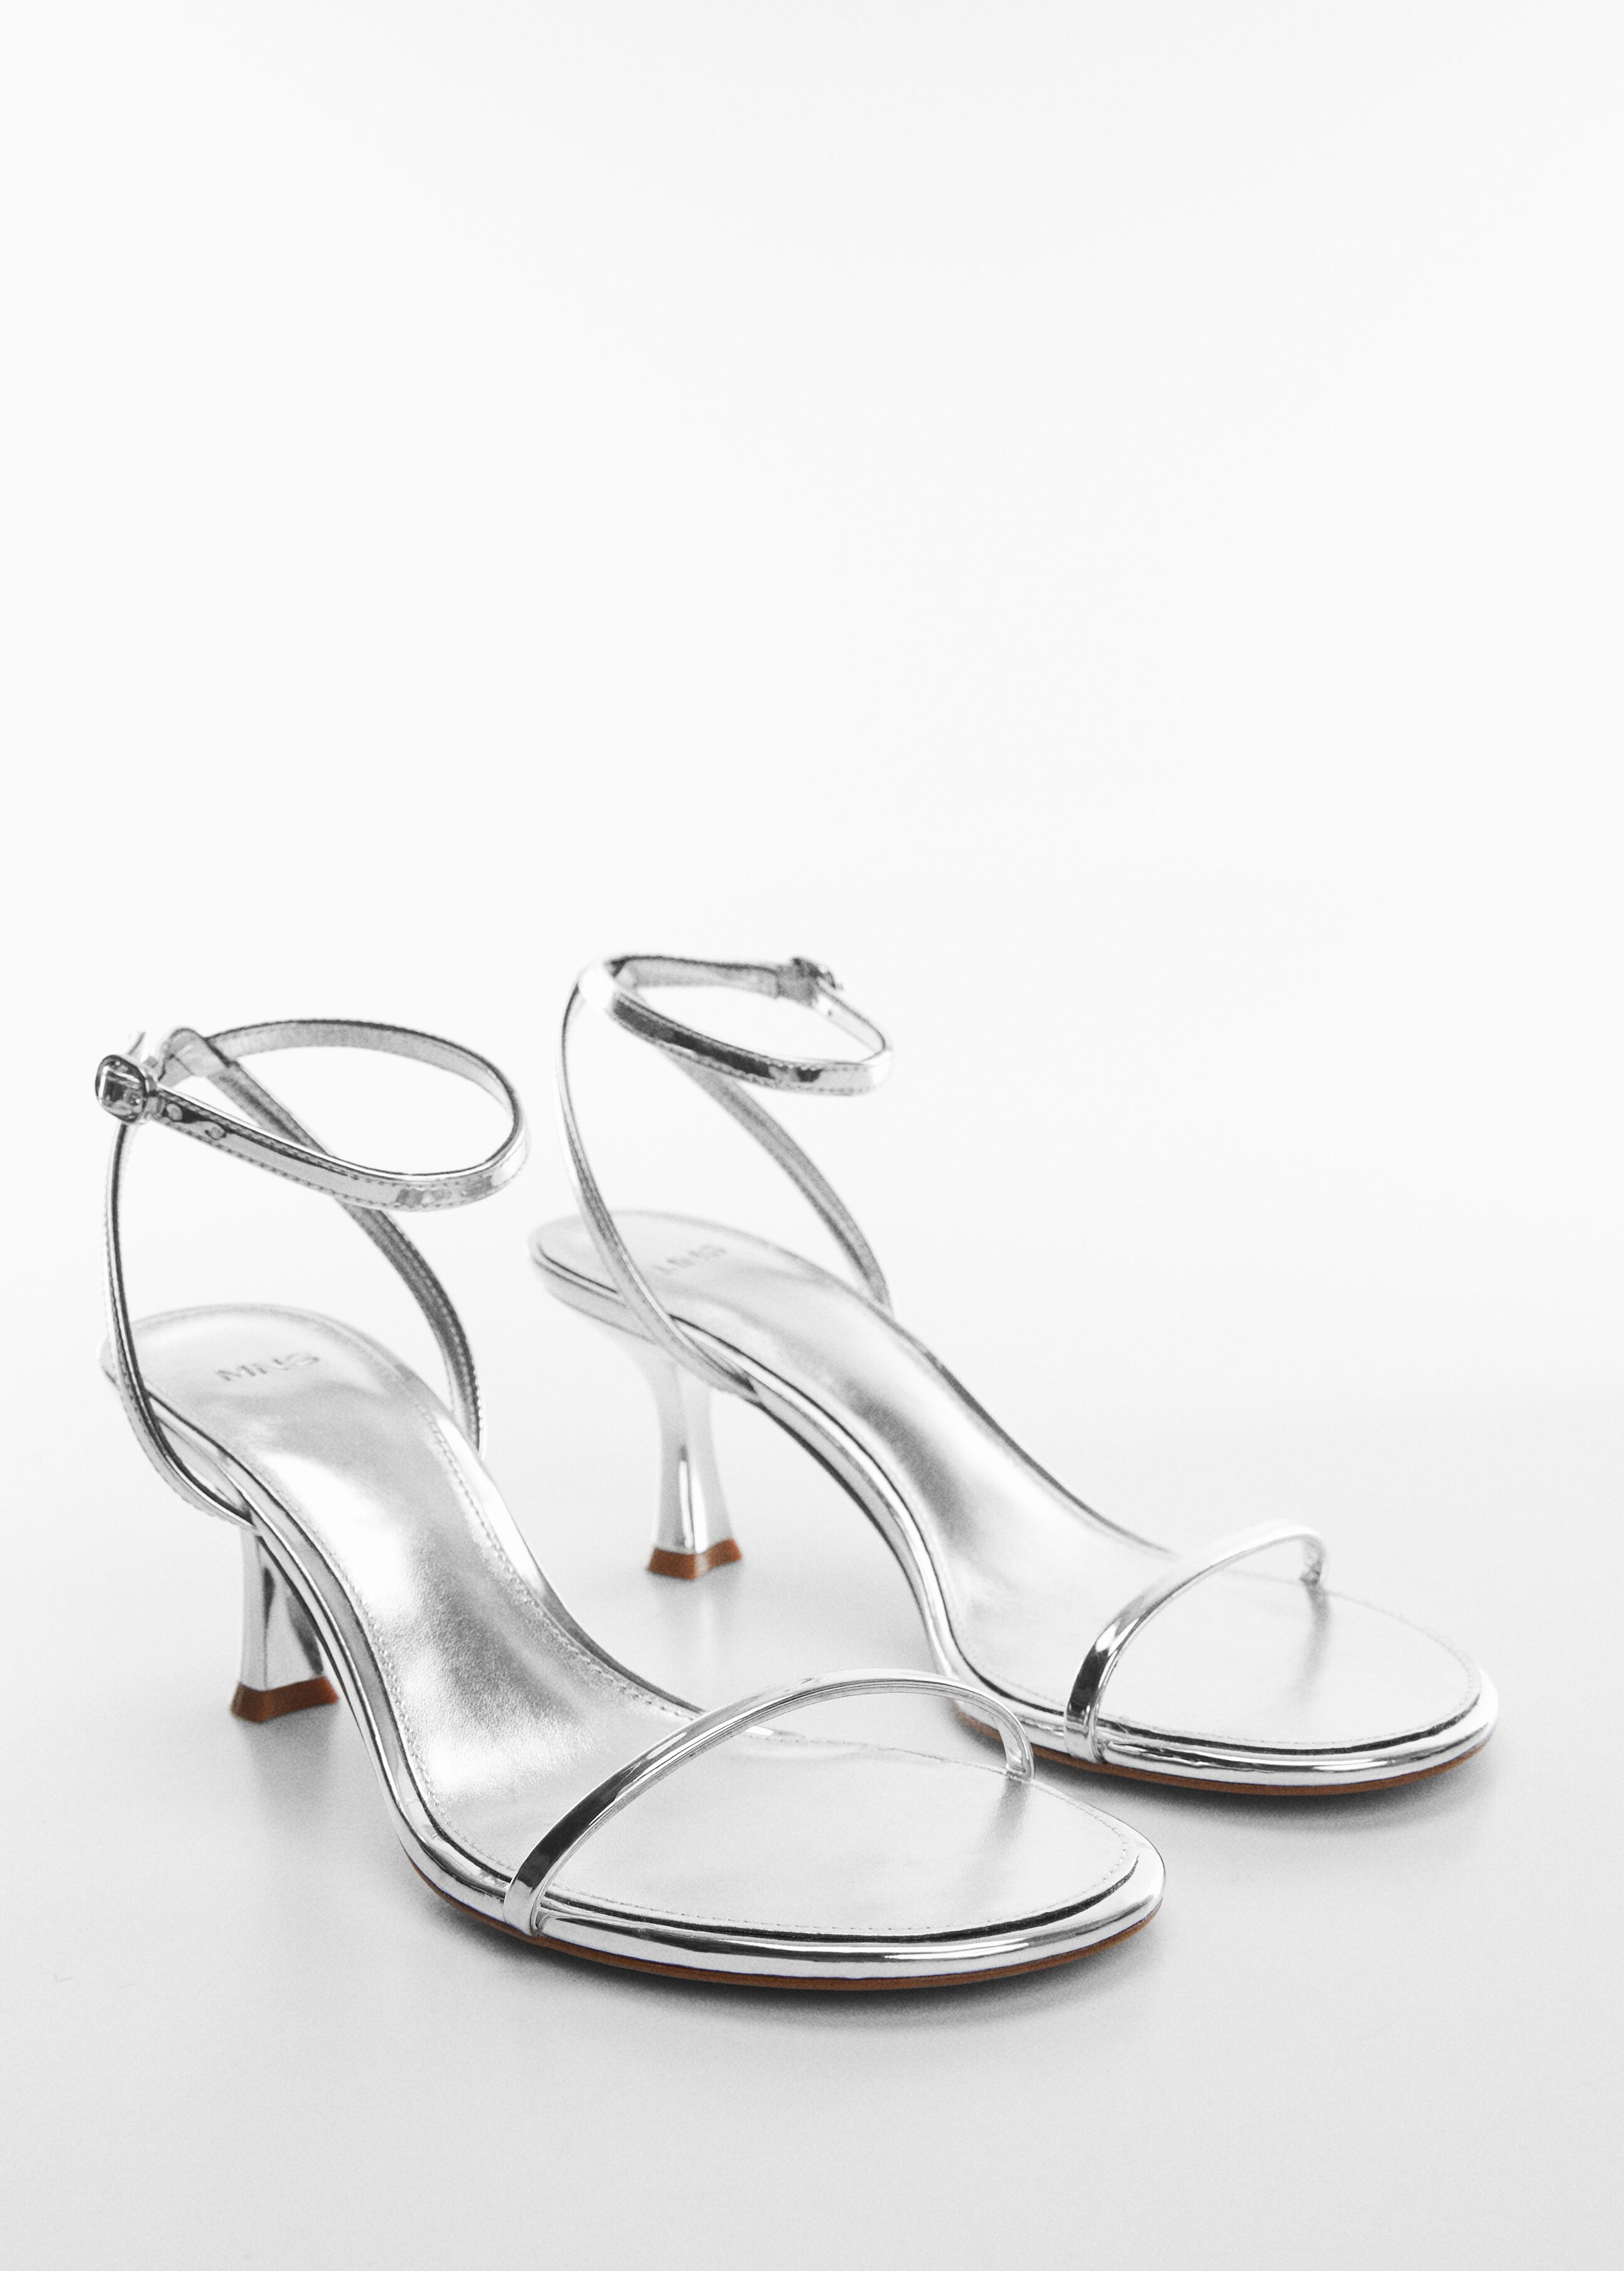 Metallic heel sandals - Medium plane